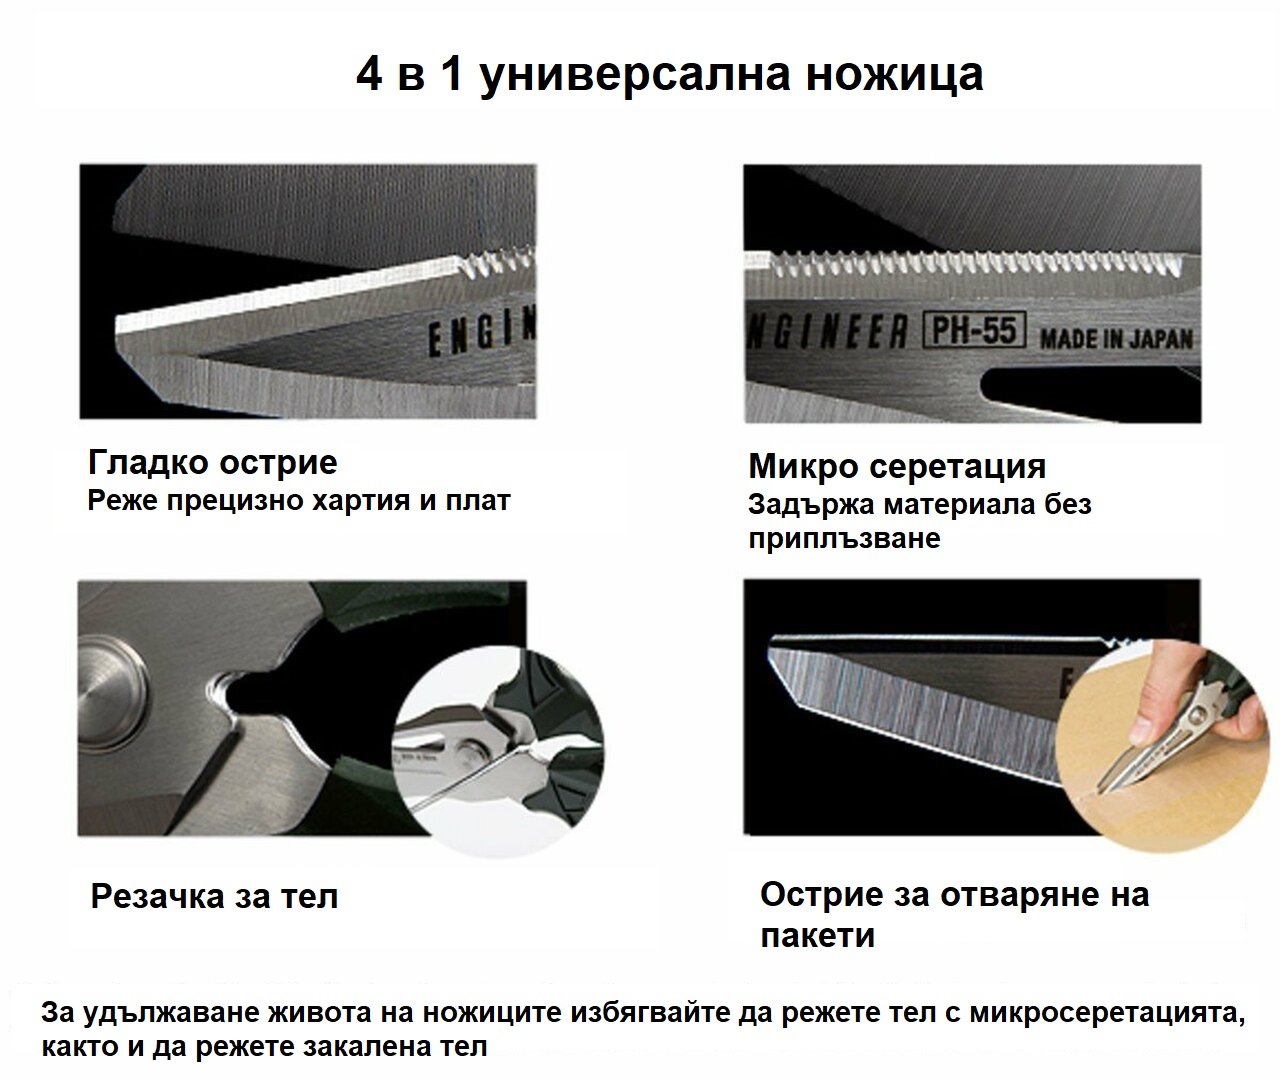 Компактни професионални ножици Engineer PH-55 4 в 1